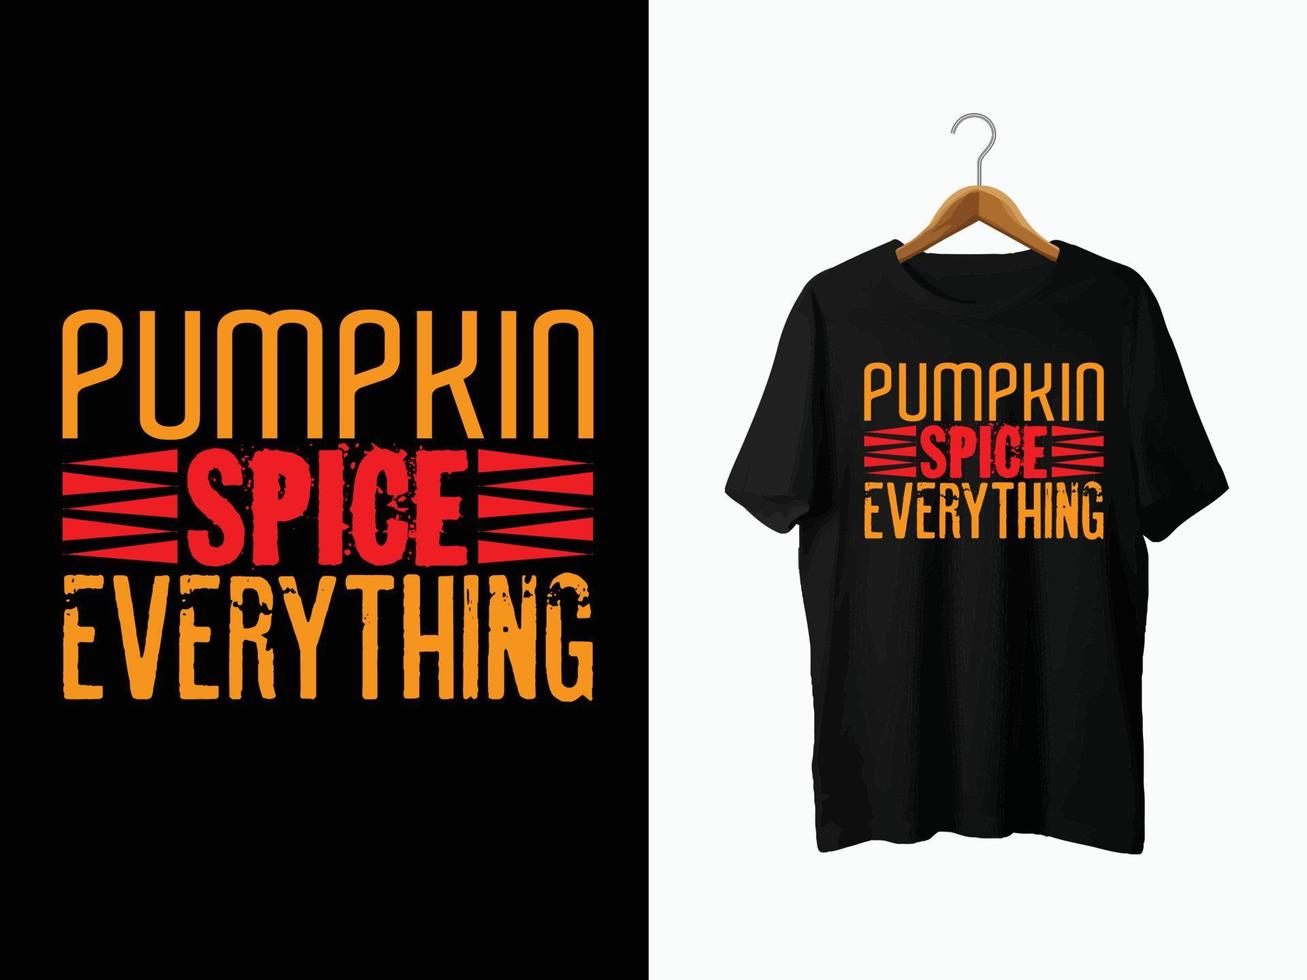 diseño de camiseta de otoño vector